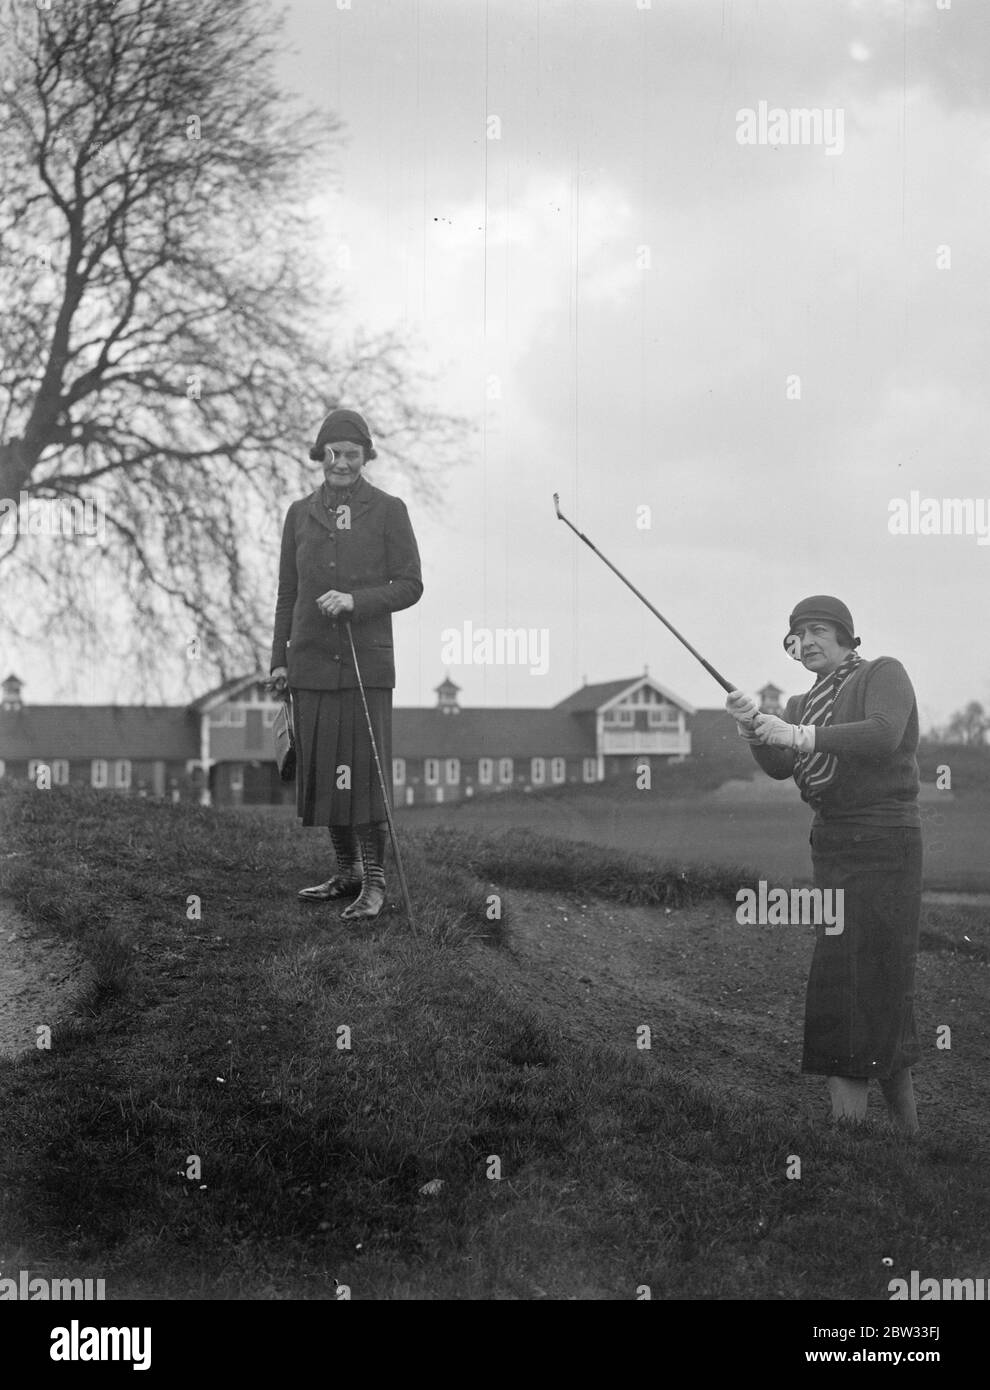 Le tournoi de golf parlementaire Dames ouvre à Ranelagh . L'association Ladies Parliamentary Golf a organisé un tournoi d'invitation au Ranelagh Club , Londres pour célébrer le 21 anniversaire de l'association , de nombreuses femmes golfeurs des cercles parlementaires y ont participé . Lady Droghoda en sortant d'un bunker surveillé par Mme Robert Fleming . 8 avril 1932 . Banque D'Images